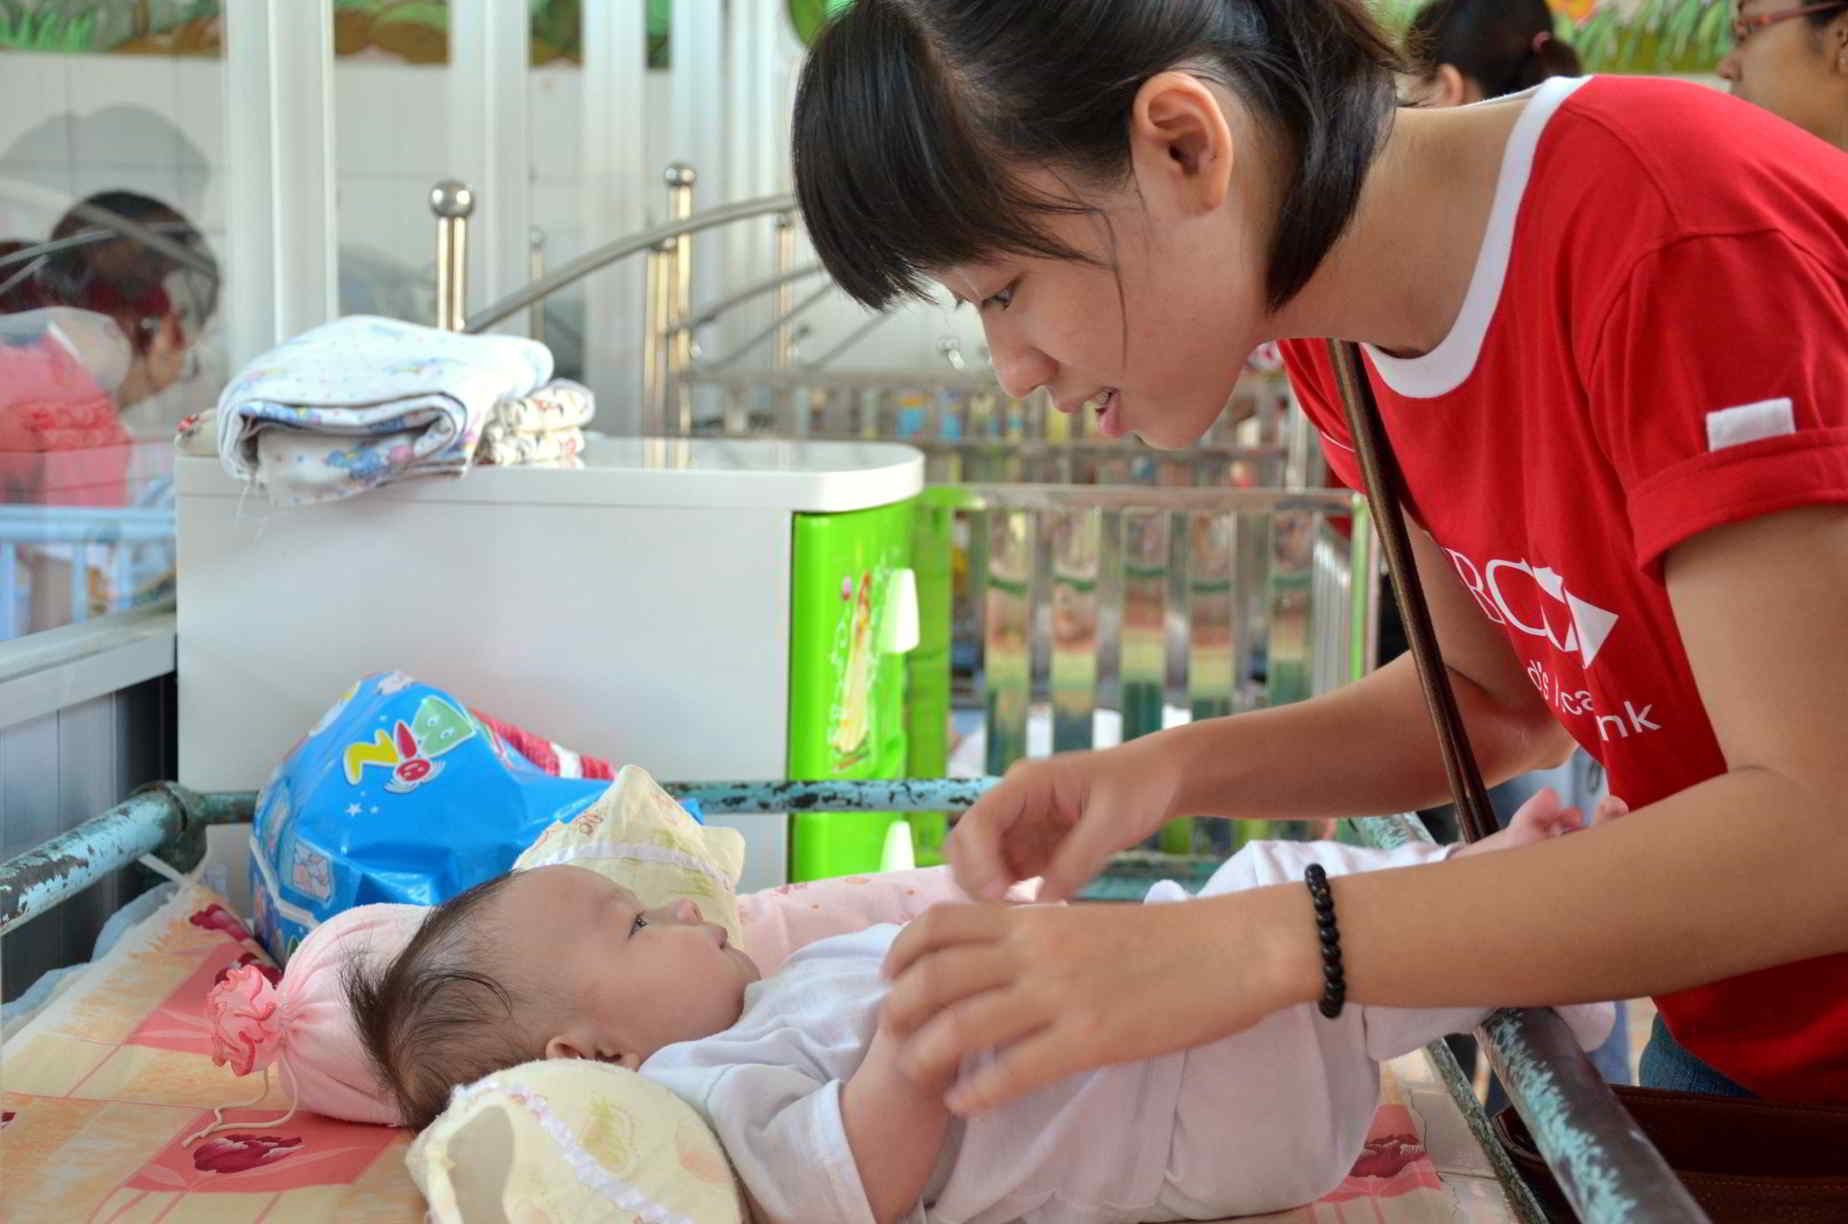 hsbc supports disadvantaged children in vietnam